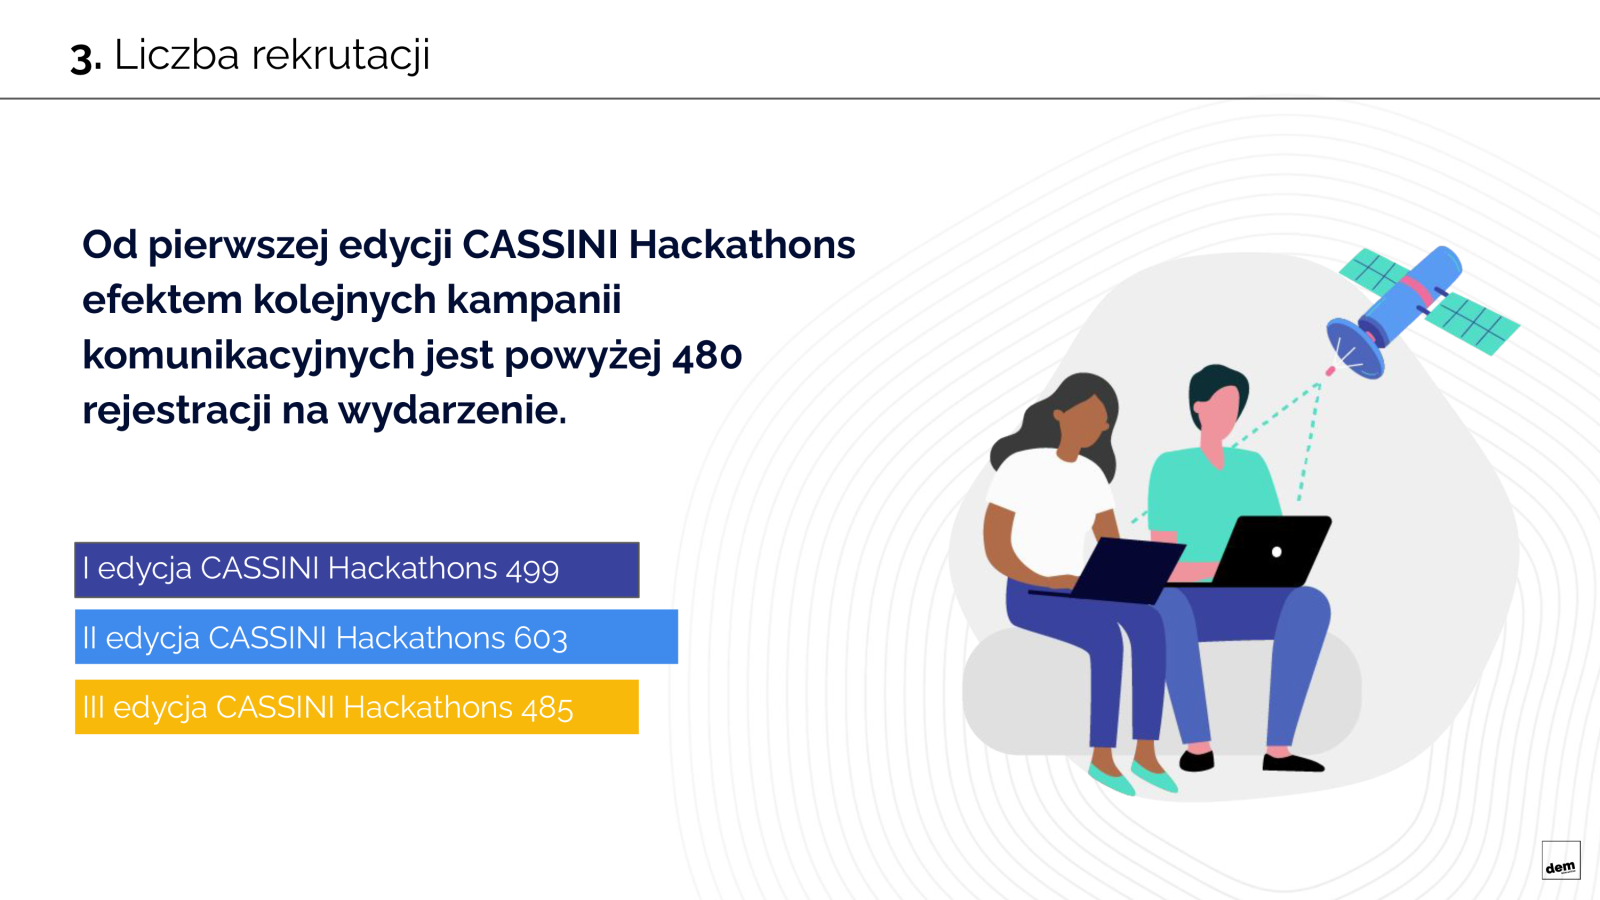 Cassini Hackathons Case Study